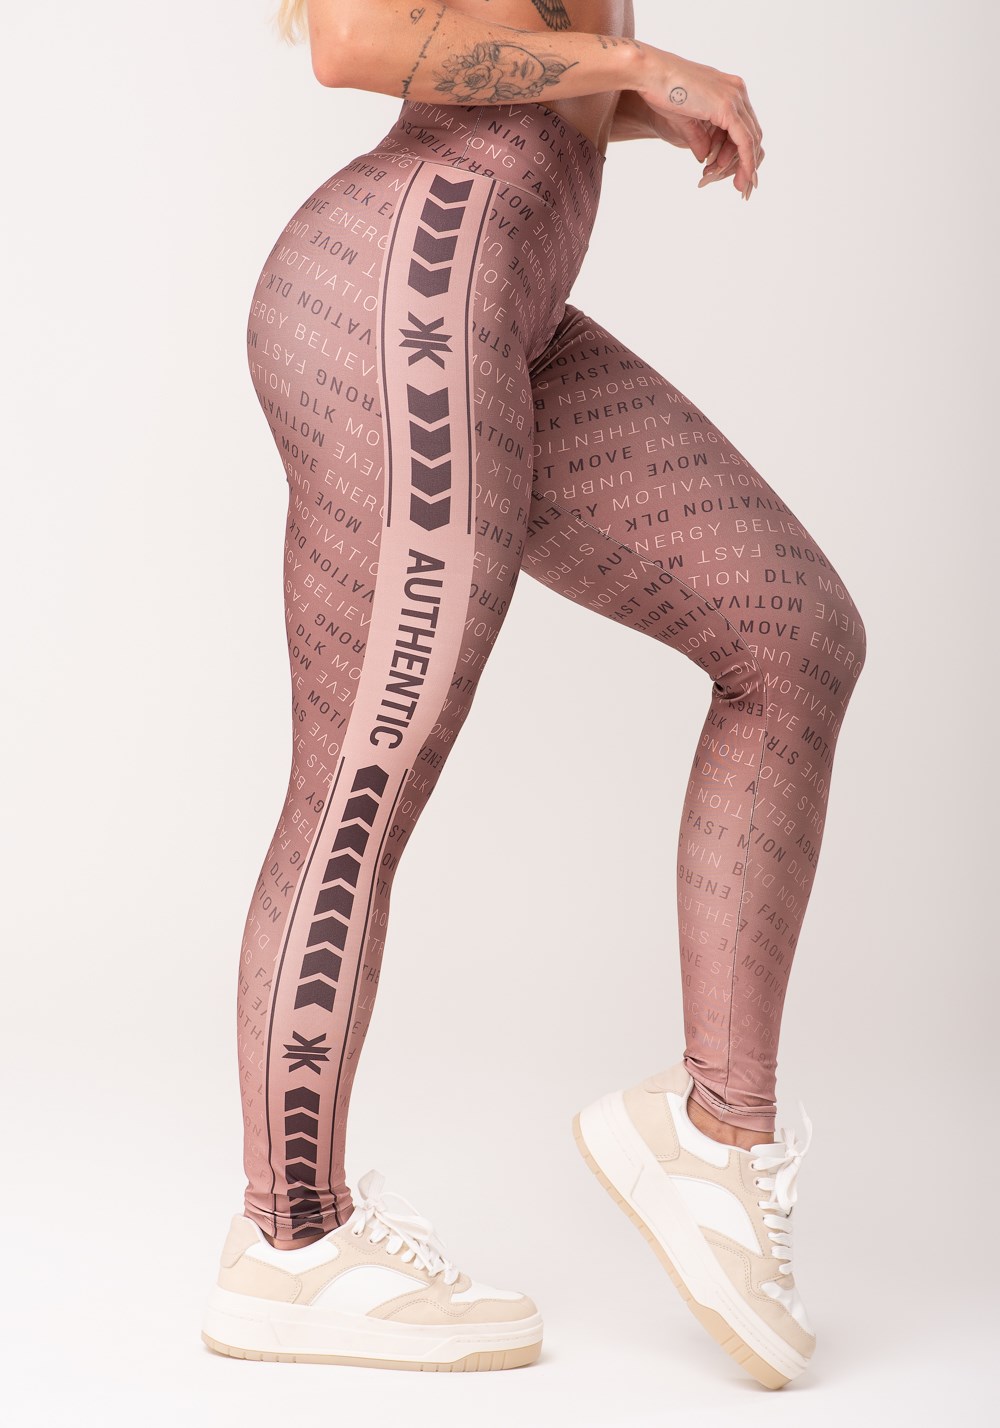 Legging fitness feminina estampada authentic marrom printed